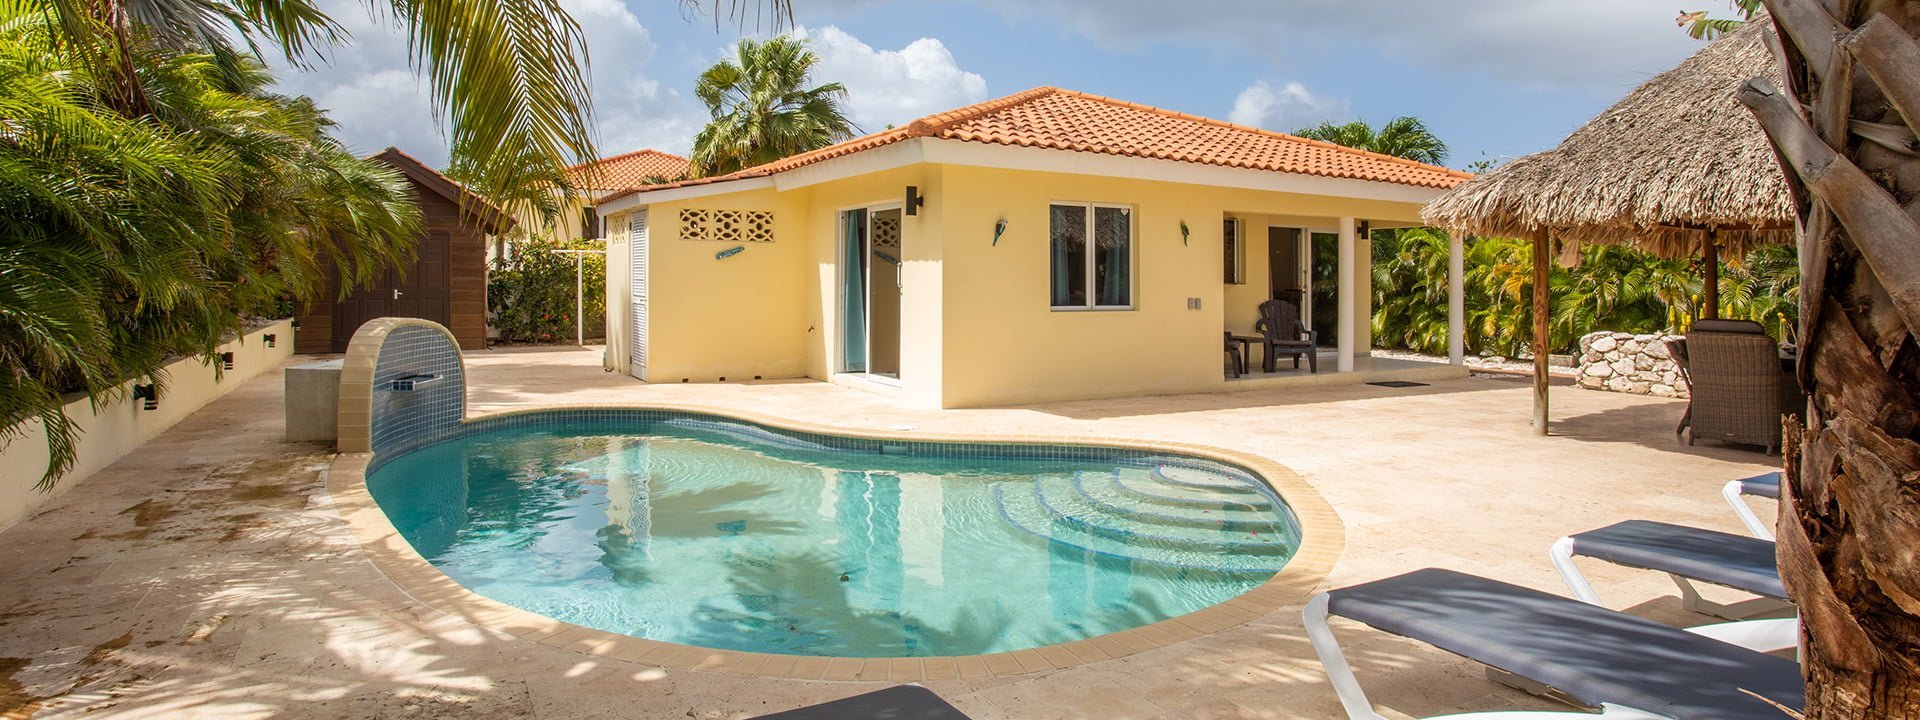 vakantiehuizen Curacao op een beveiligd resort